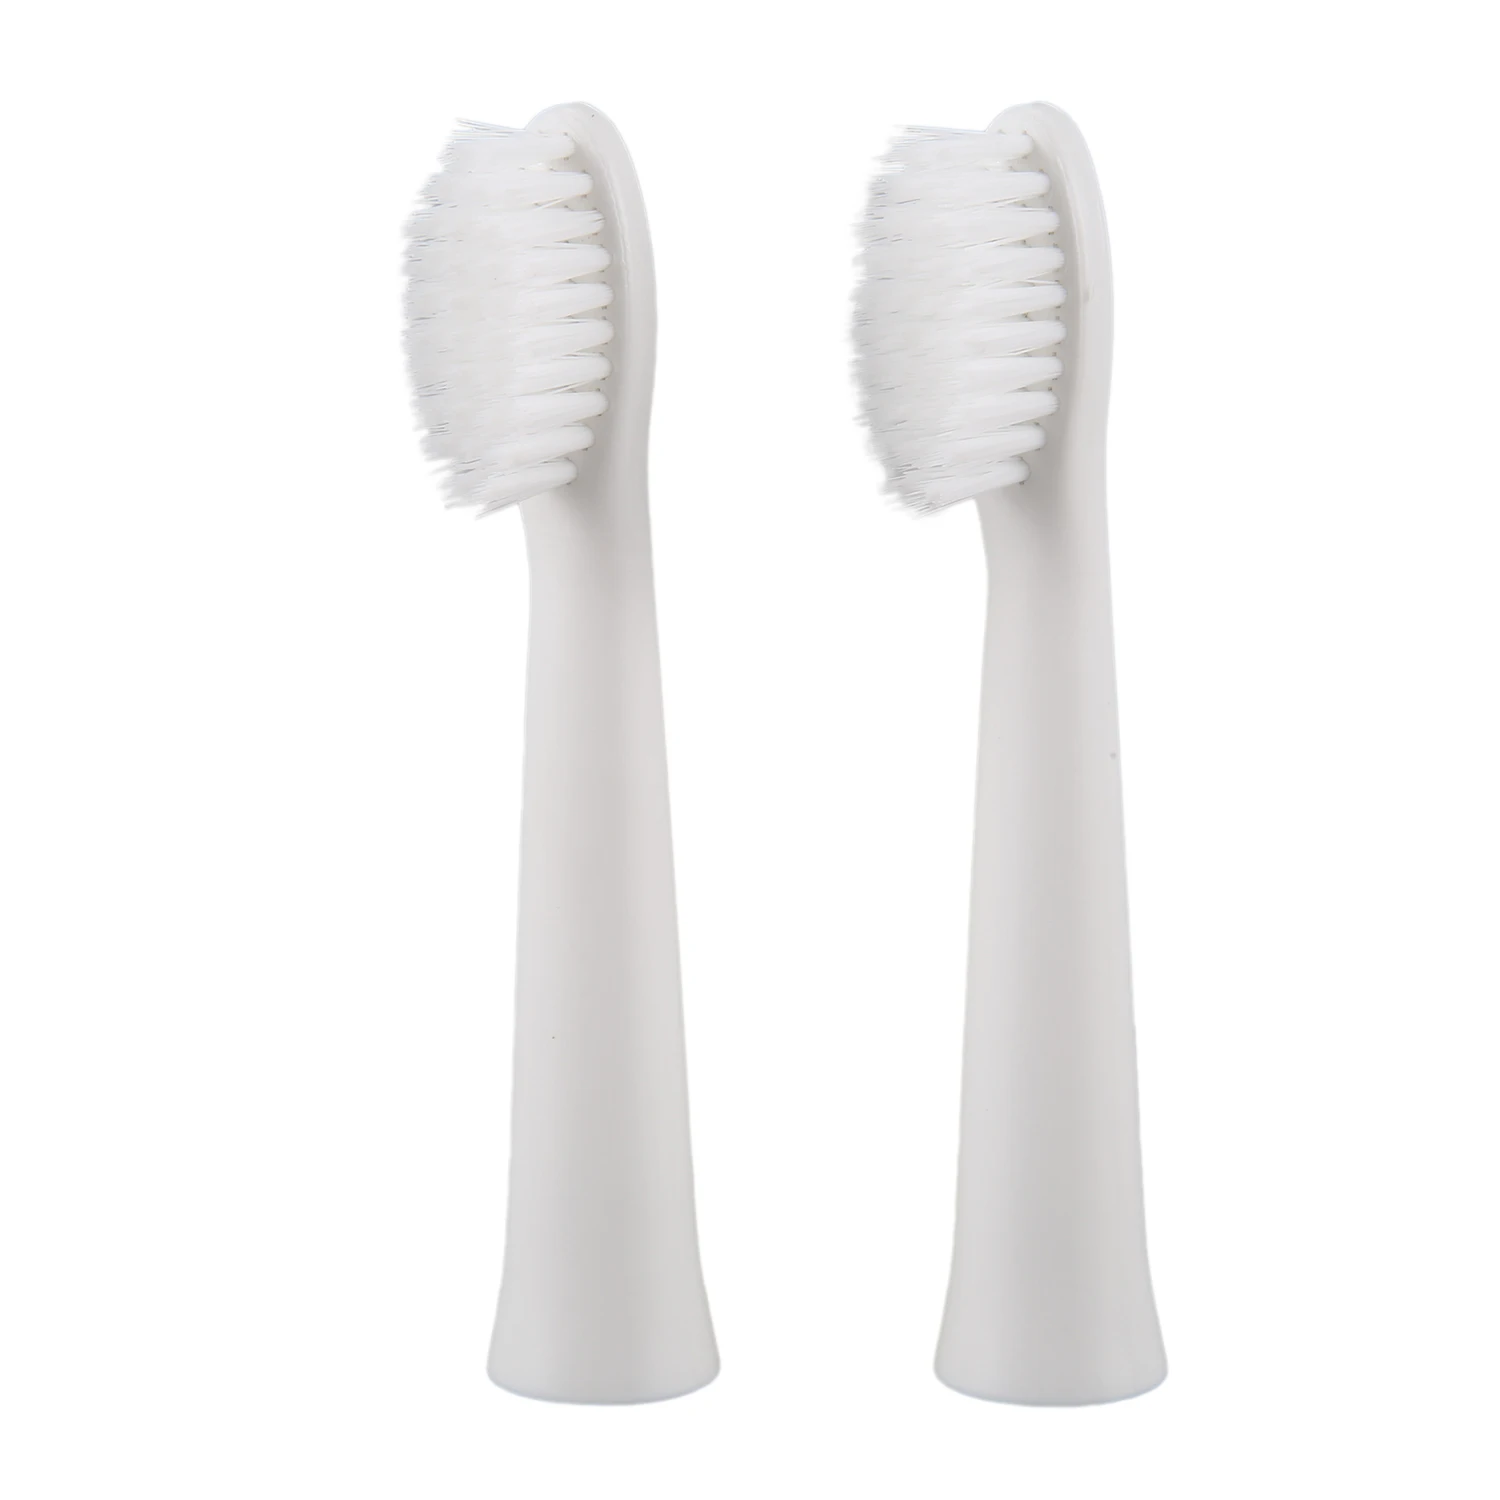 

Replacement Brush Heads for Panasonic EW0972 Toothbrush, White, 2 Count